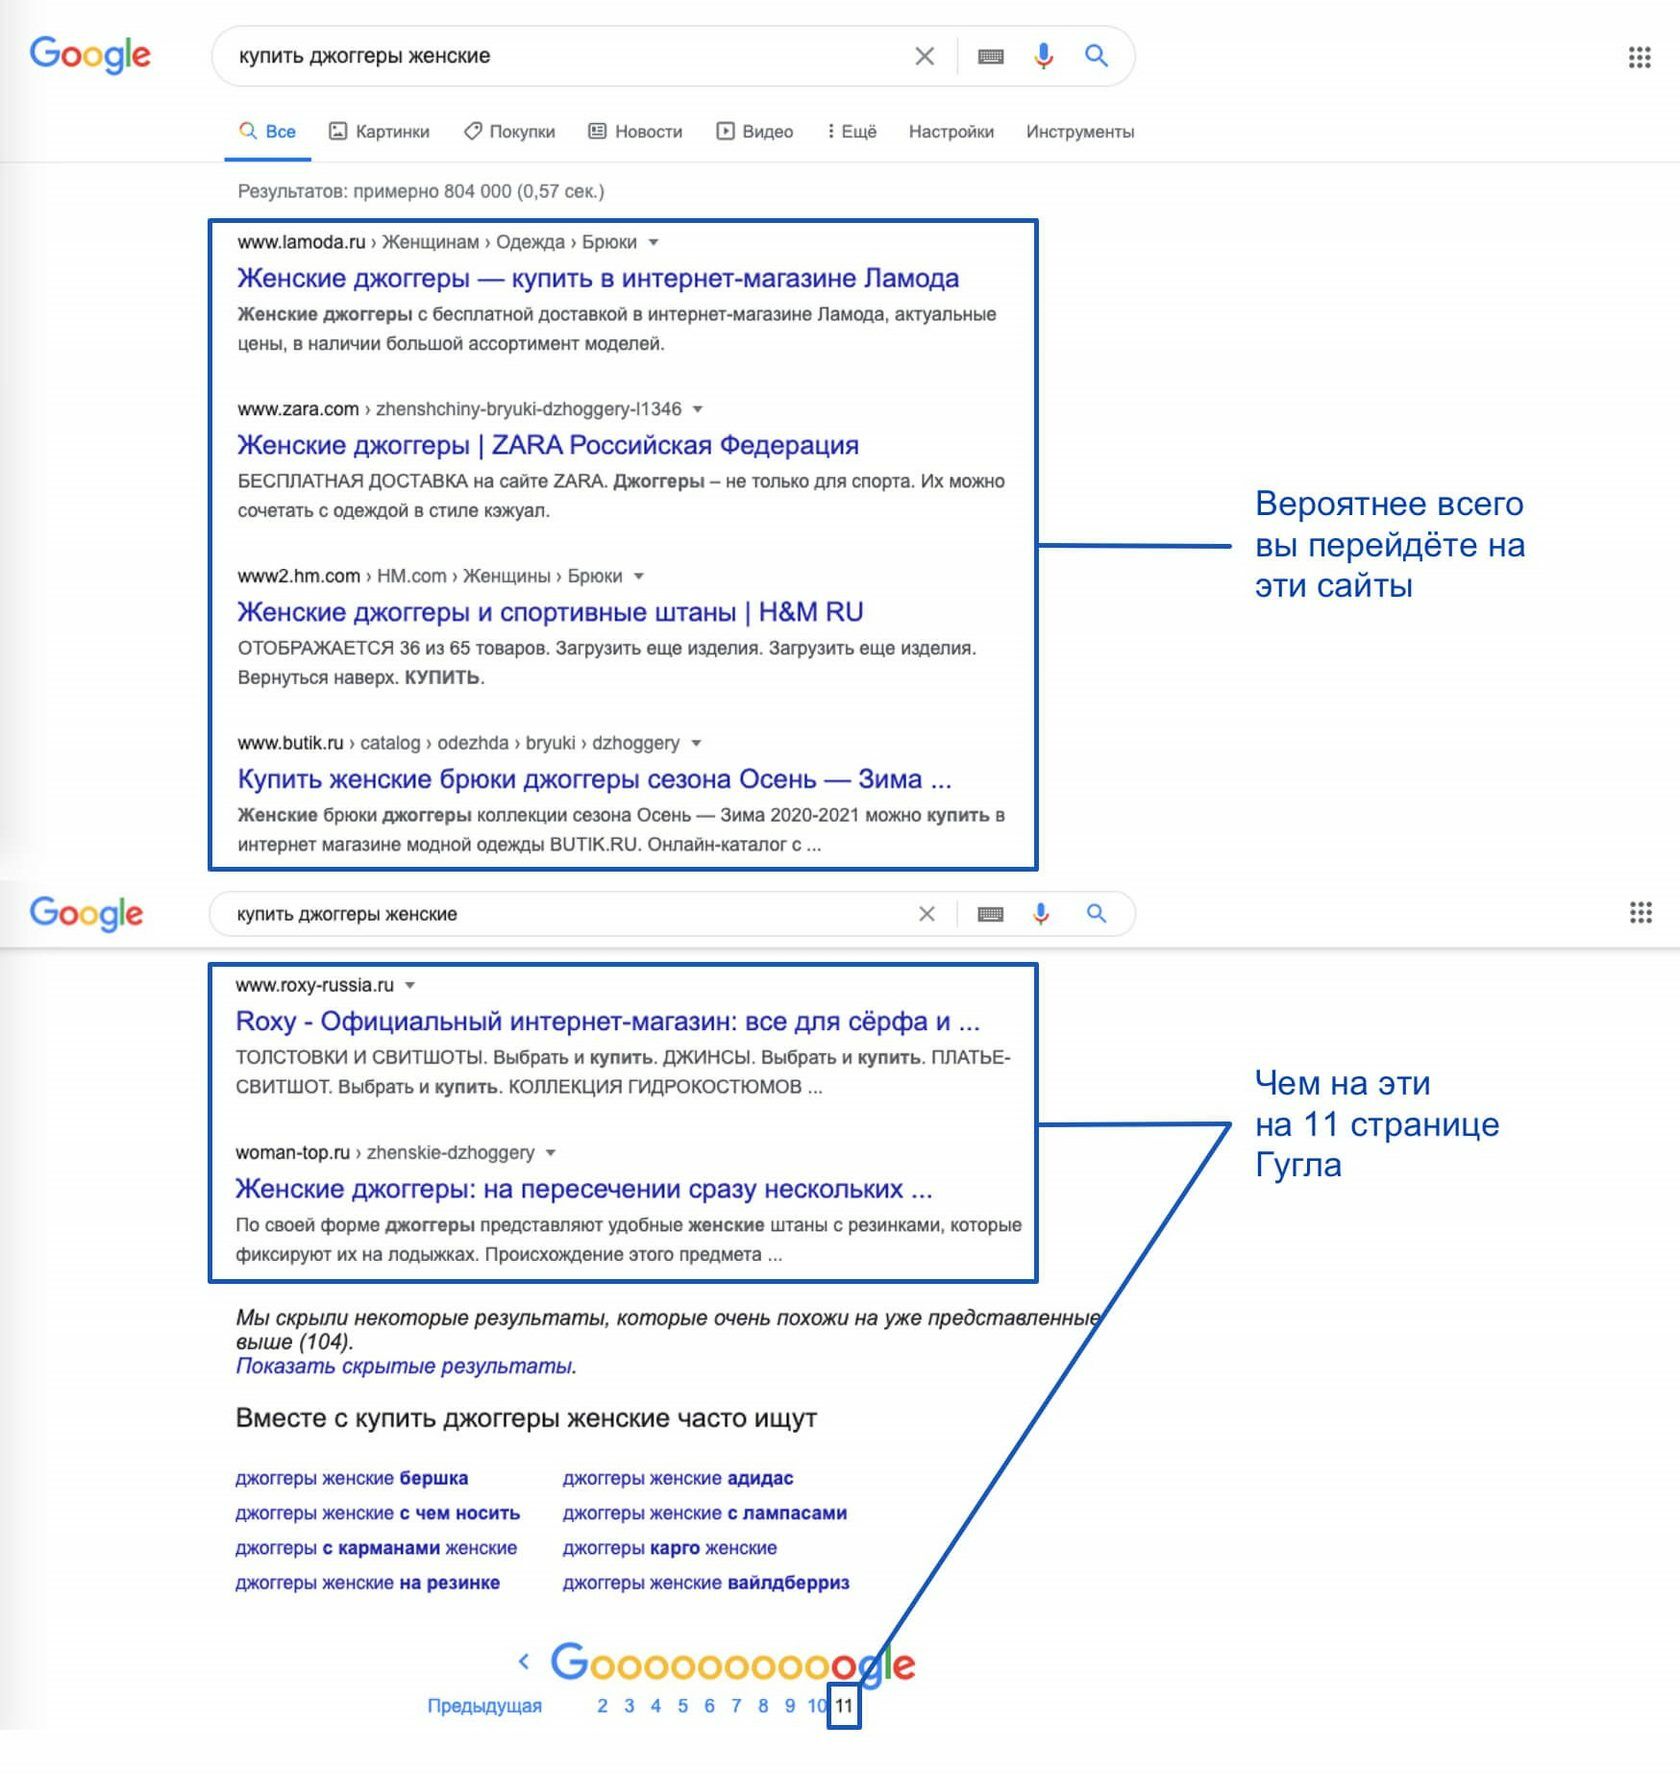 Поисковая оптимизация в действии на примере Гугла